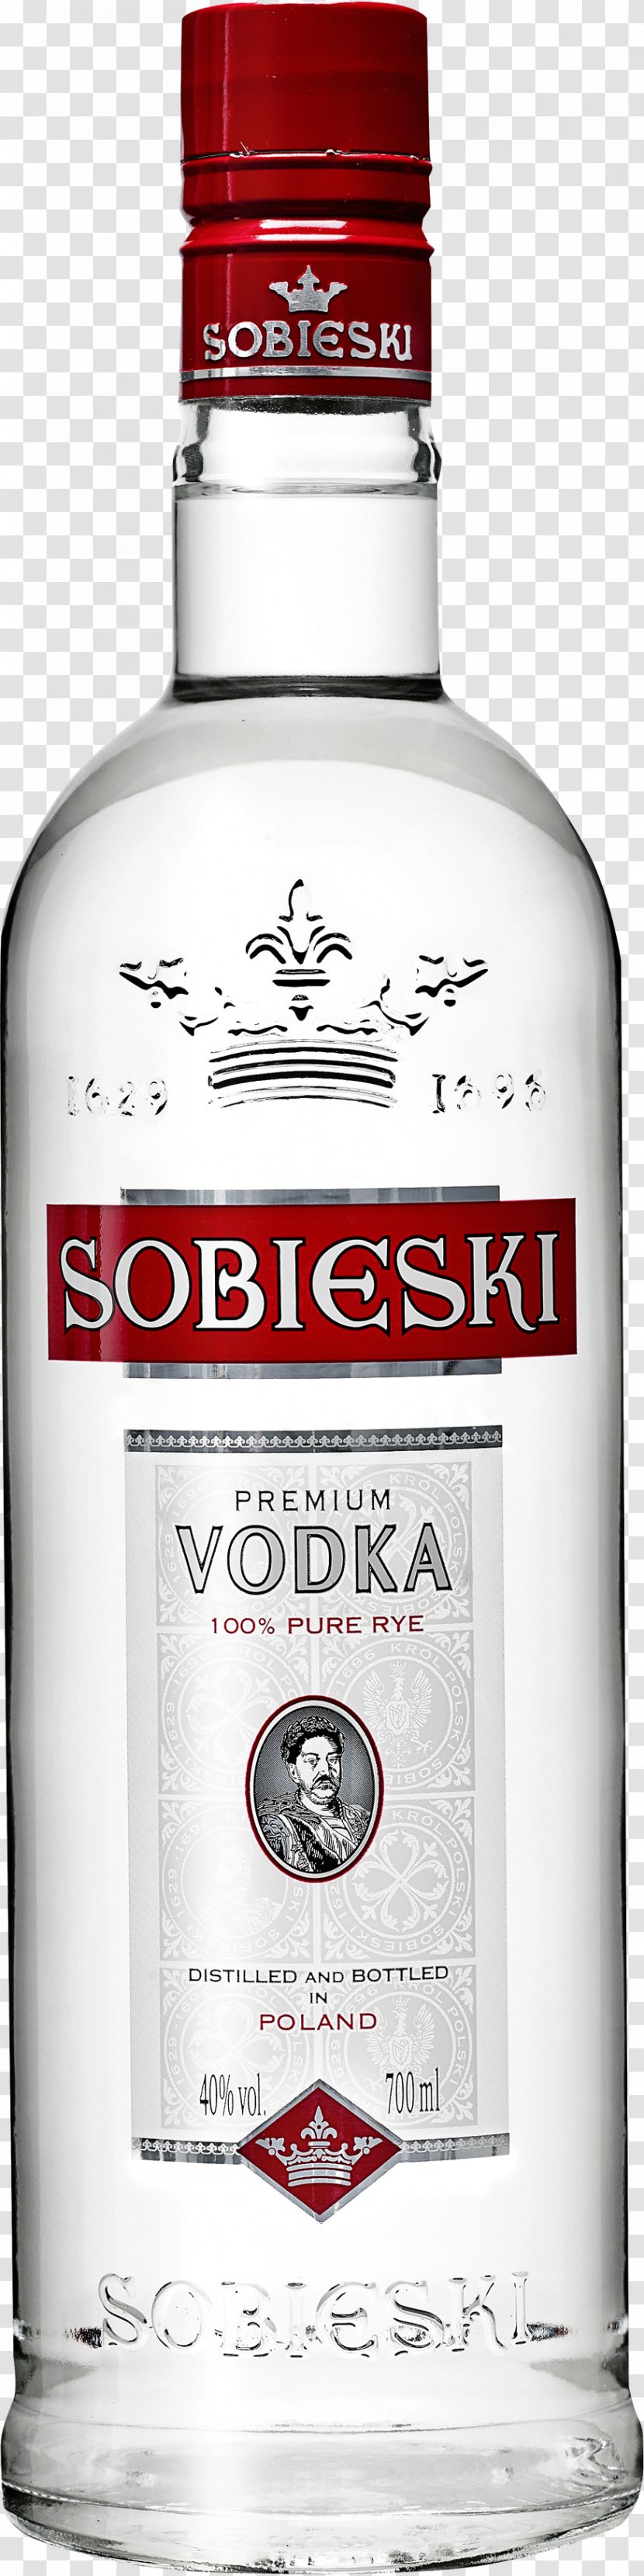 Vodka Distilled Beverage Polish Cuisine Chopin Sobieski - Tonic - Image Transparent PNG